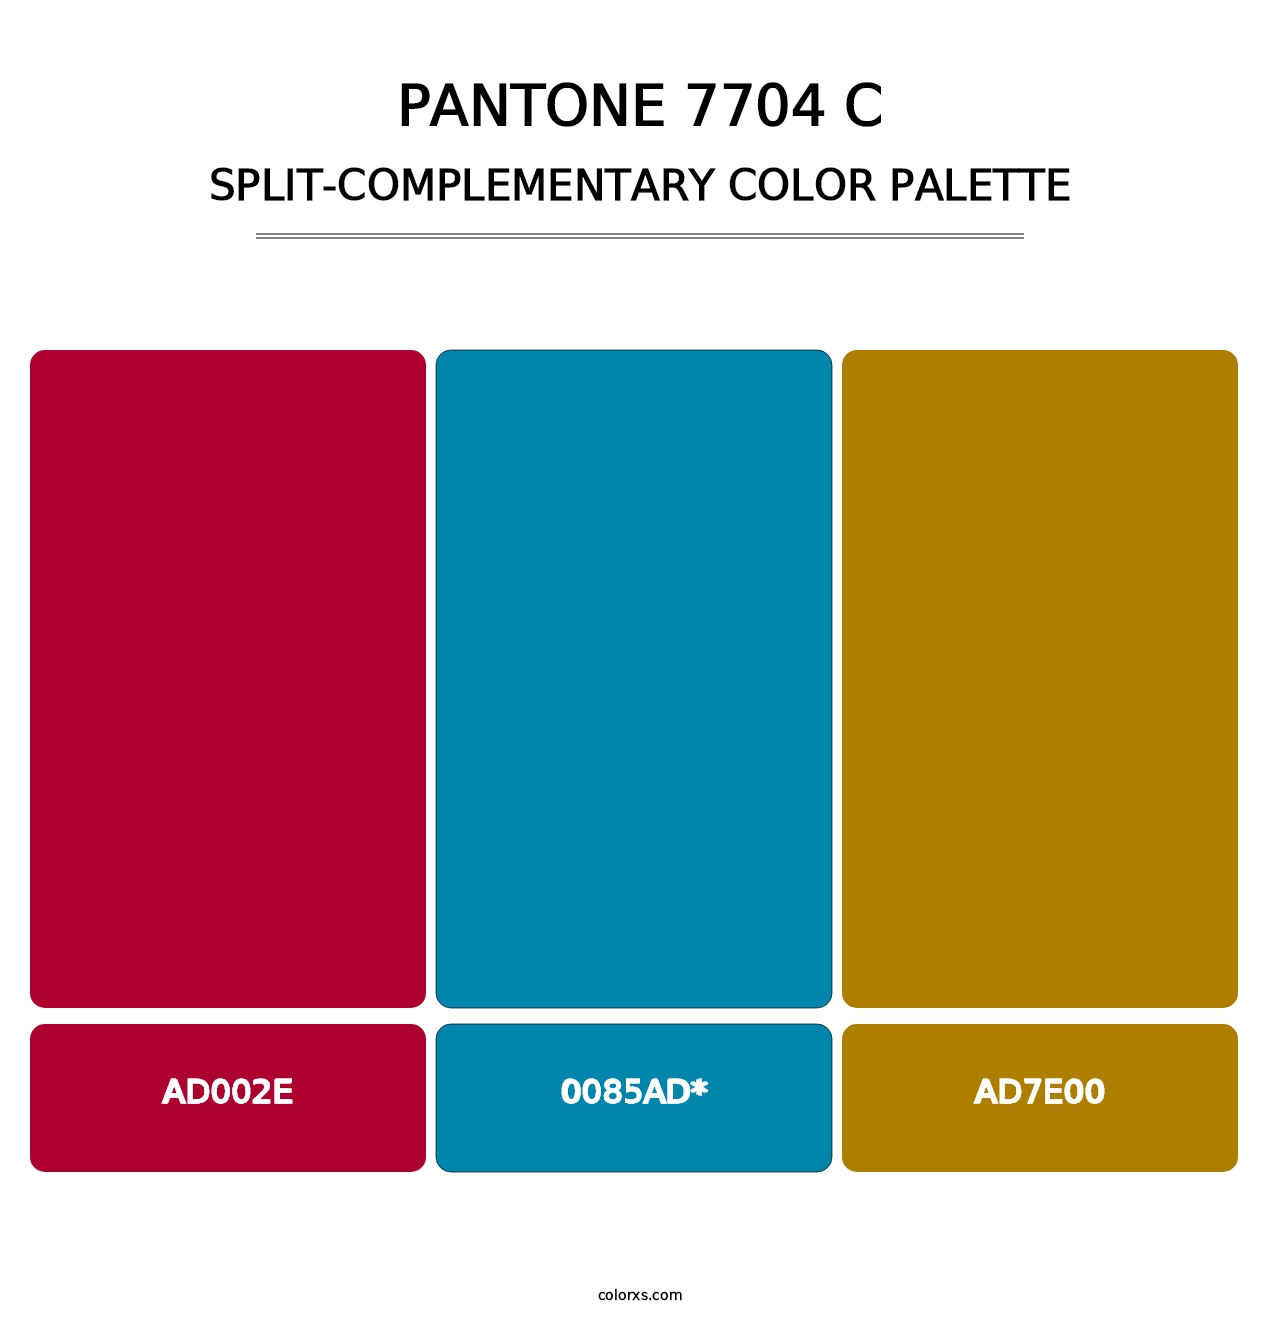 PANTONE 7704 C - Split-Complementary Color Palette